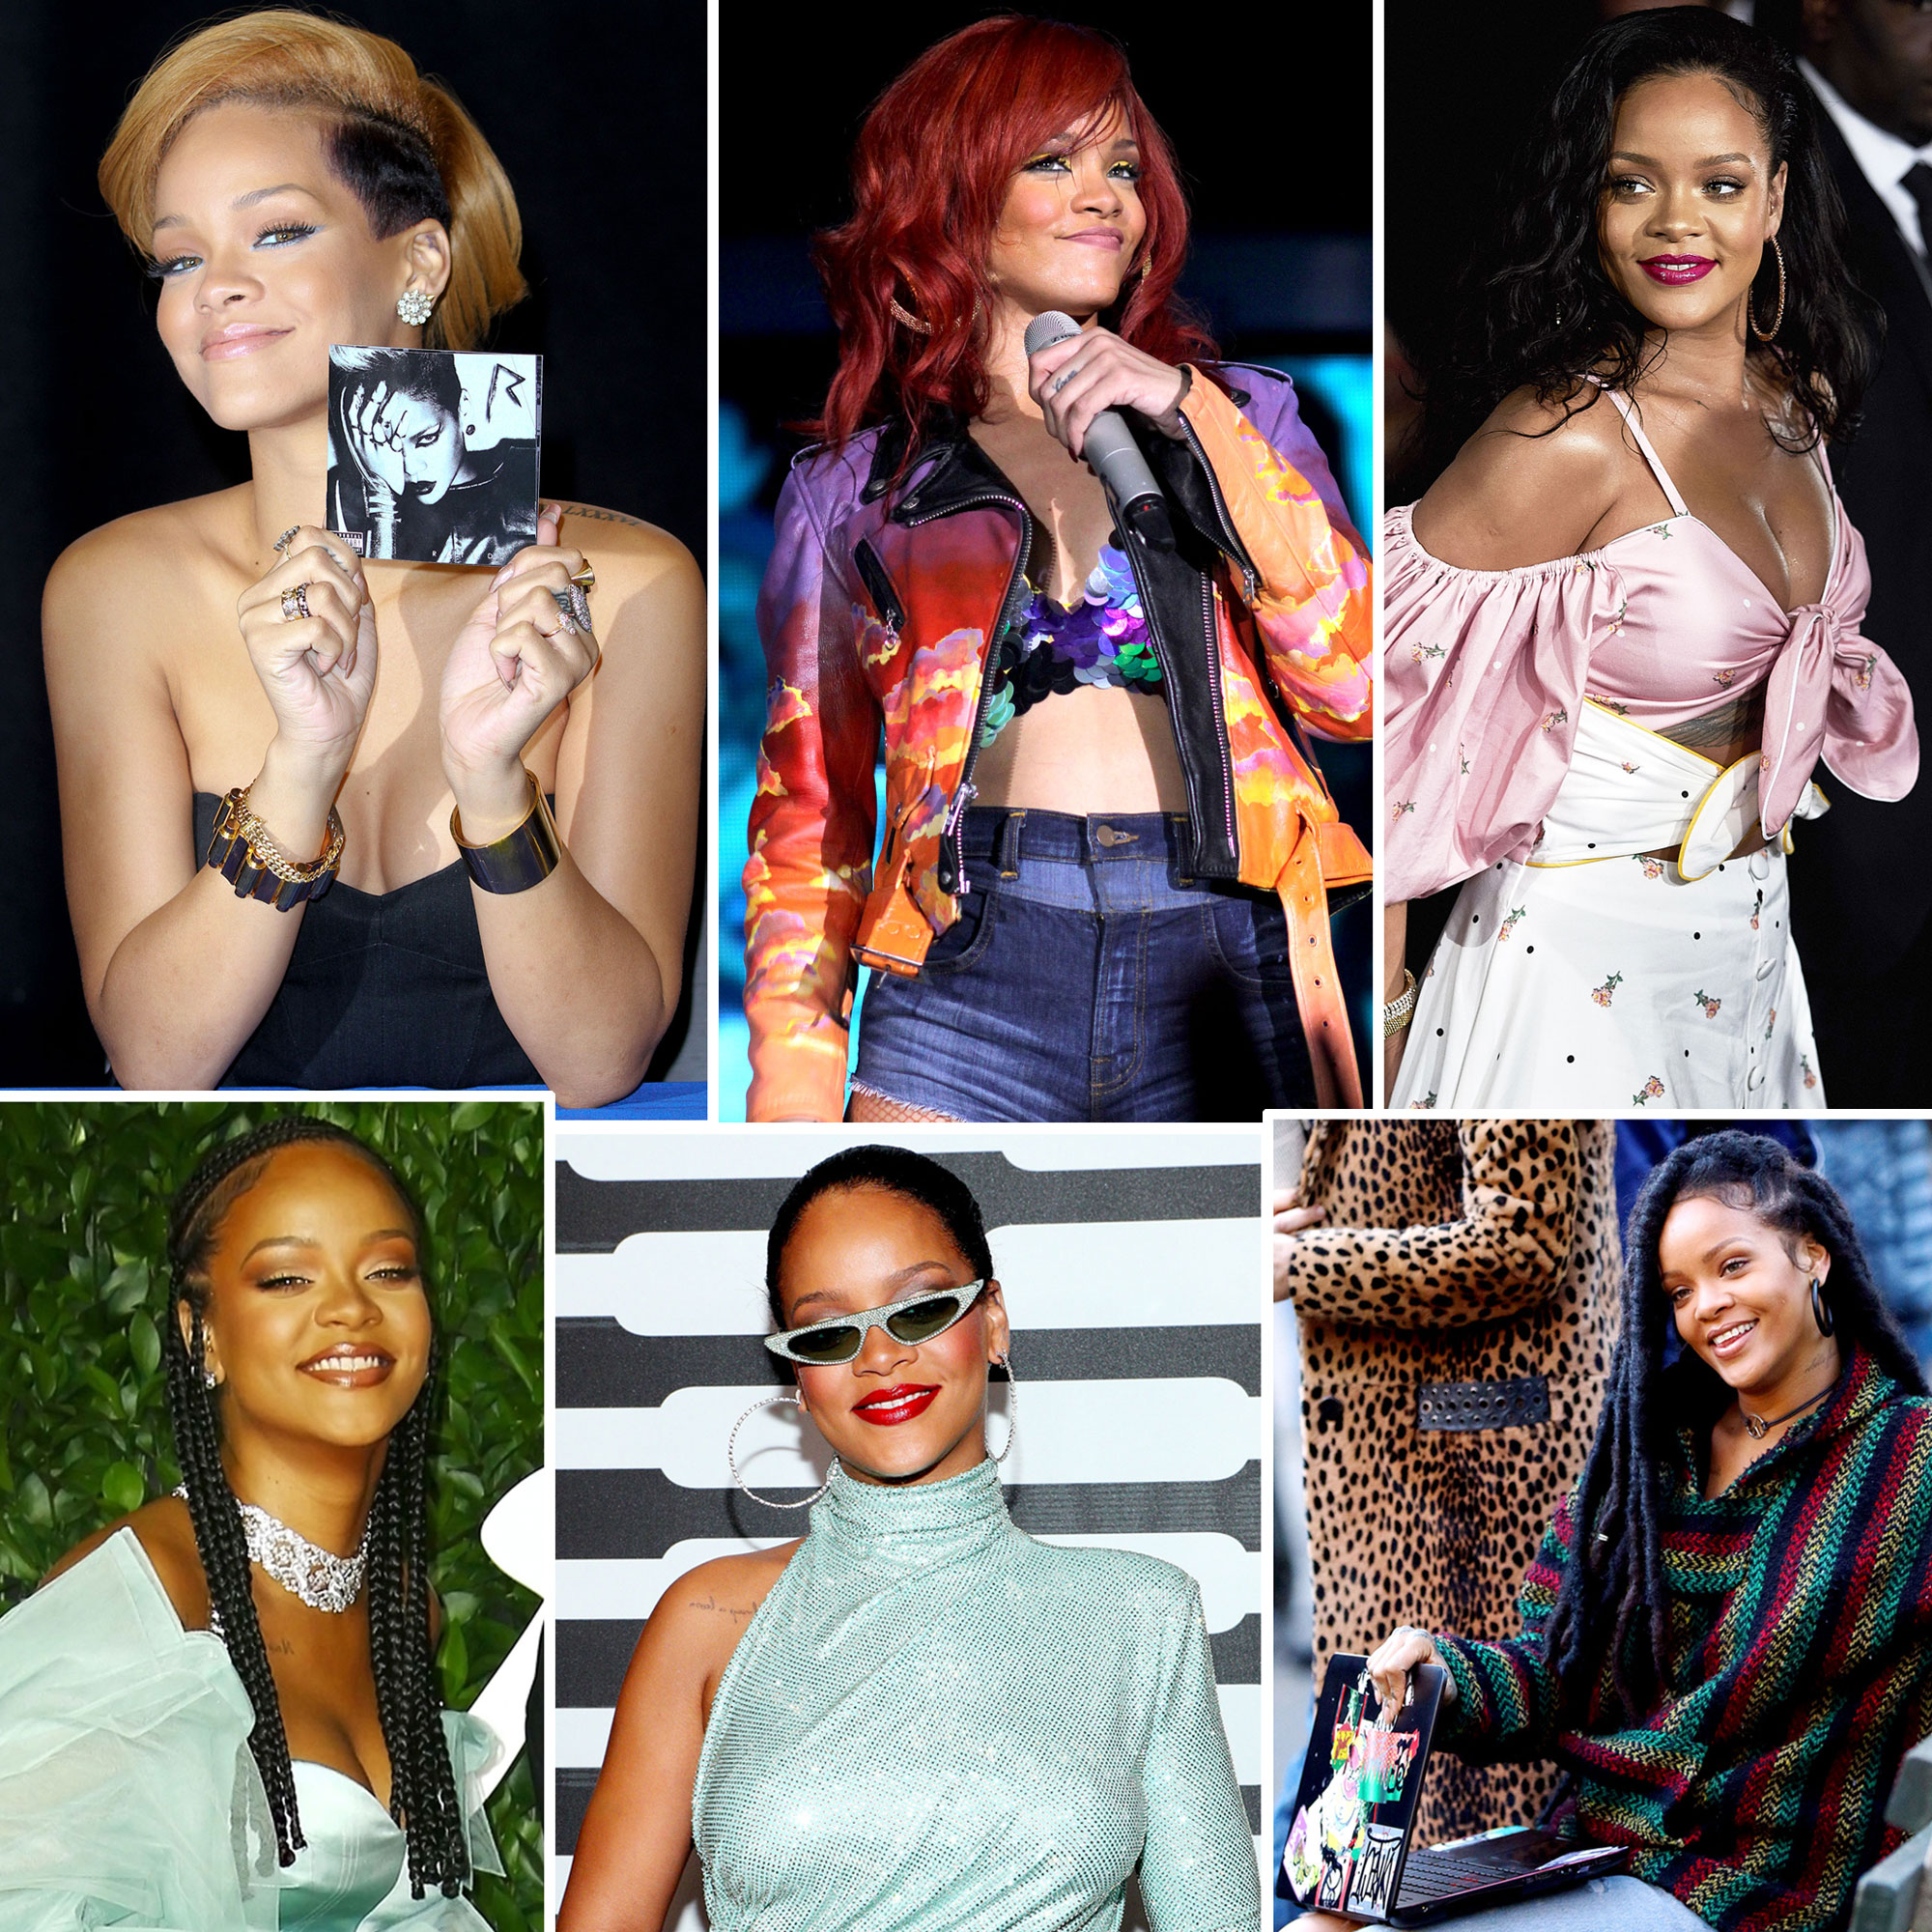 Rihanna Best Street Style Outfits, 88 Rihanna Fashion Looks